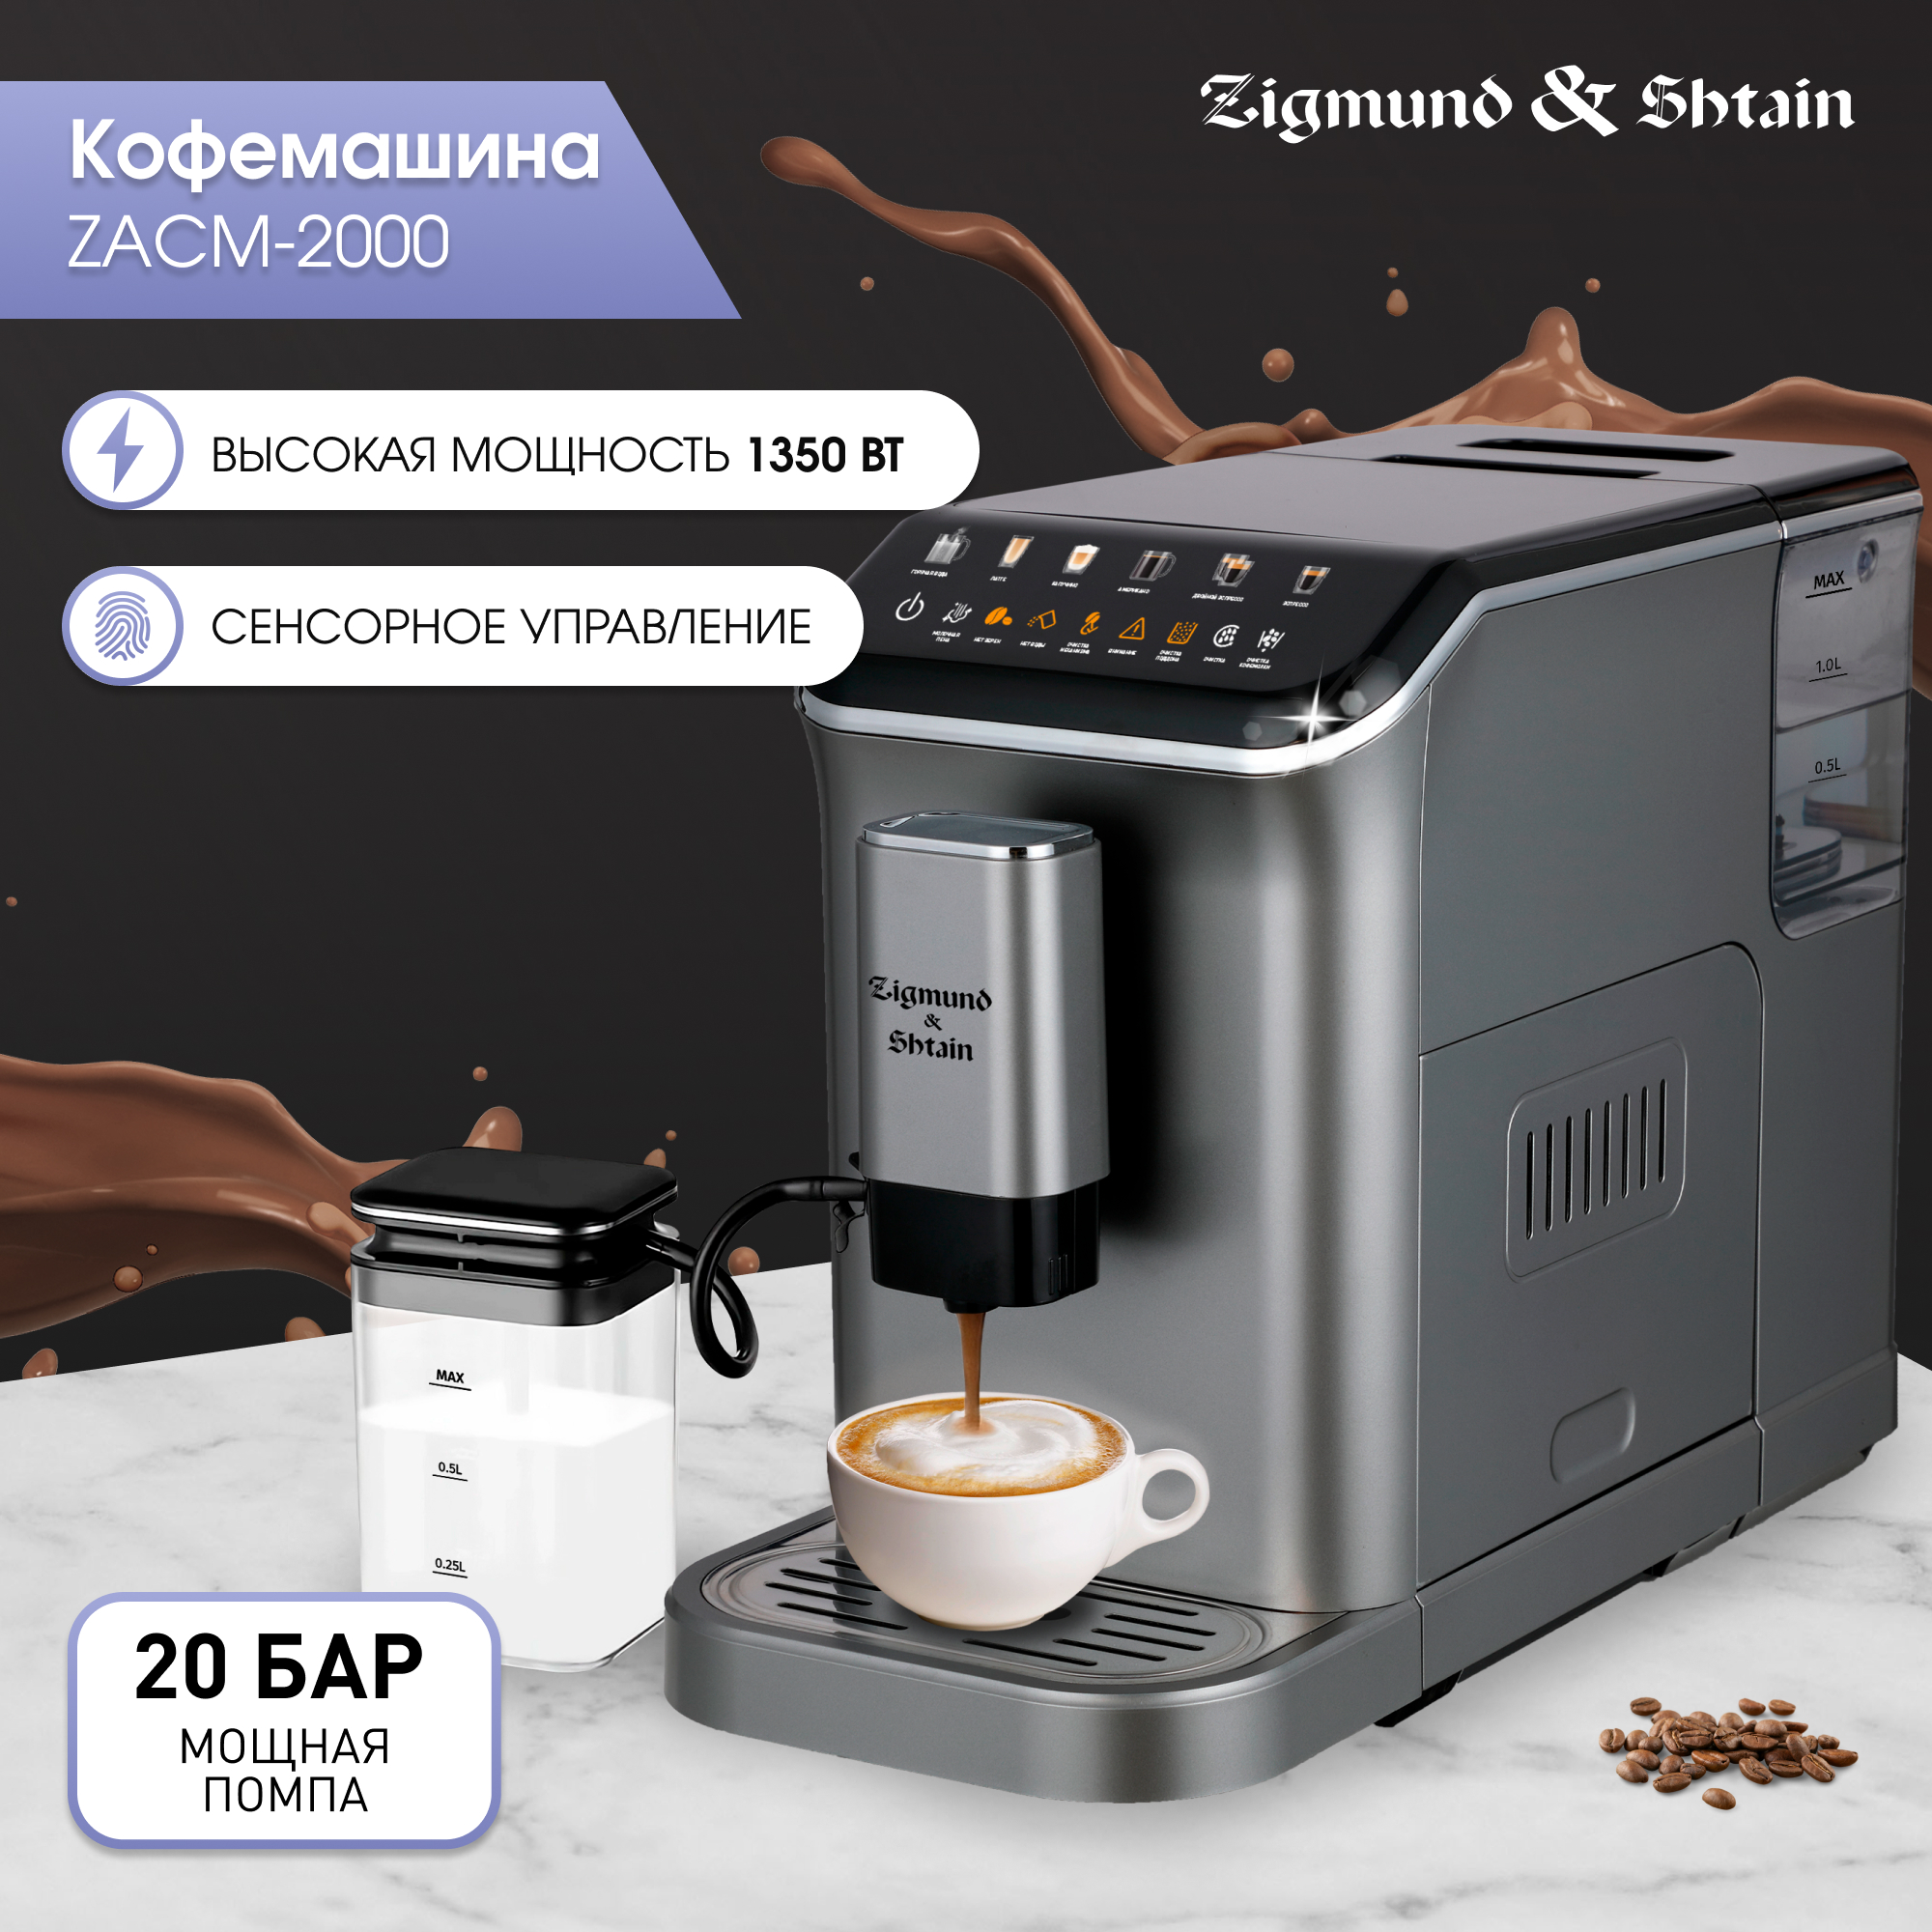 Кофемашина автоматическая Zigmund & Shtain ZACM-2000 серая кофемашина автоматическая alvatto due коричневая серая